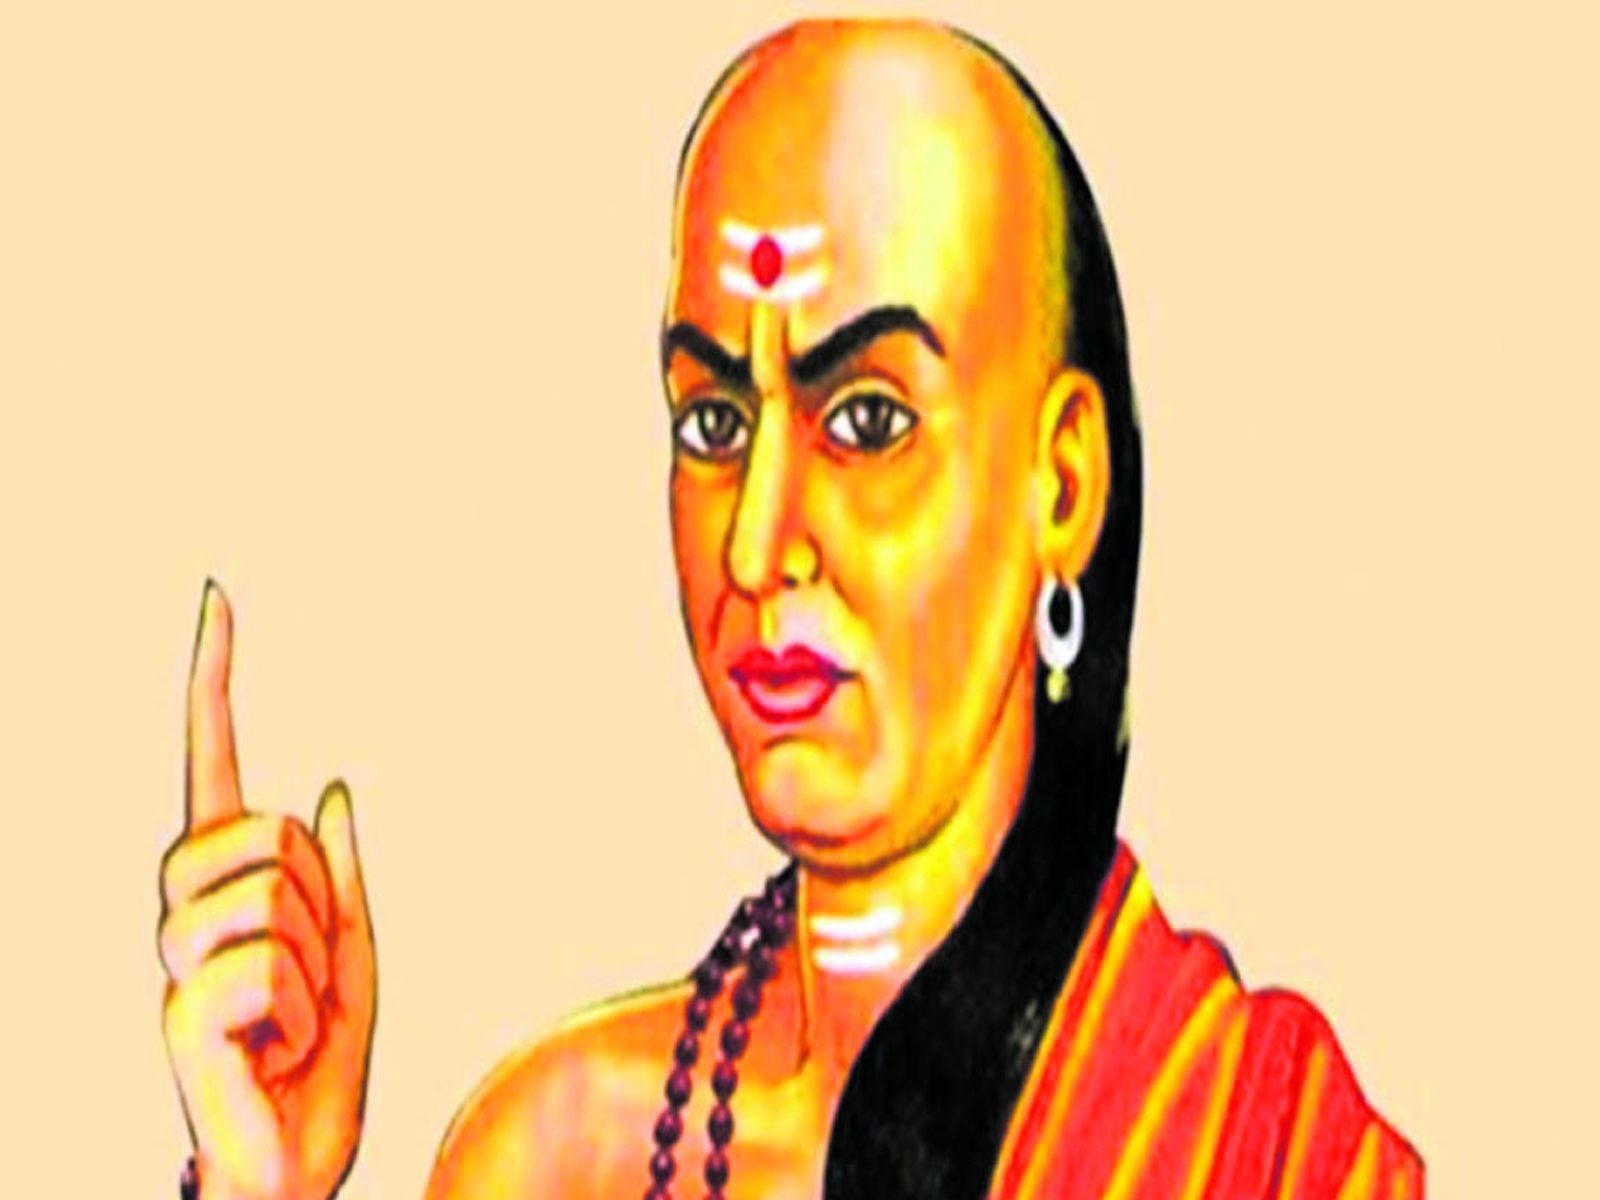  Chanakya Niti: ਵਿਦਿਆਰਥੀਆਂ ਨੂੰ ਕਰਨਾ ਚਾਹੀਦਾ ਇਨ੍ਹਾਂ ਆਦਤਾਂ ਦਾ ਤਿਆਗ, ਮਿਲੇਗੀ ਸਫ਼ਲਤਾ(ਸੰਕੇਤਕ ਫੋਟੋ)